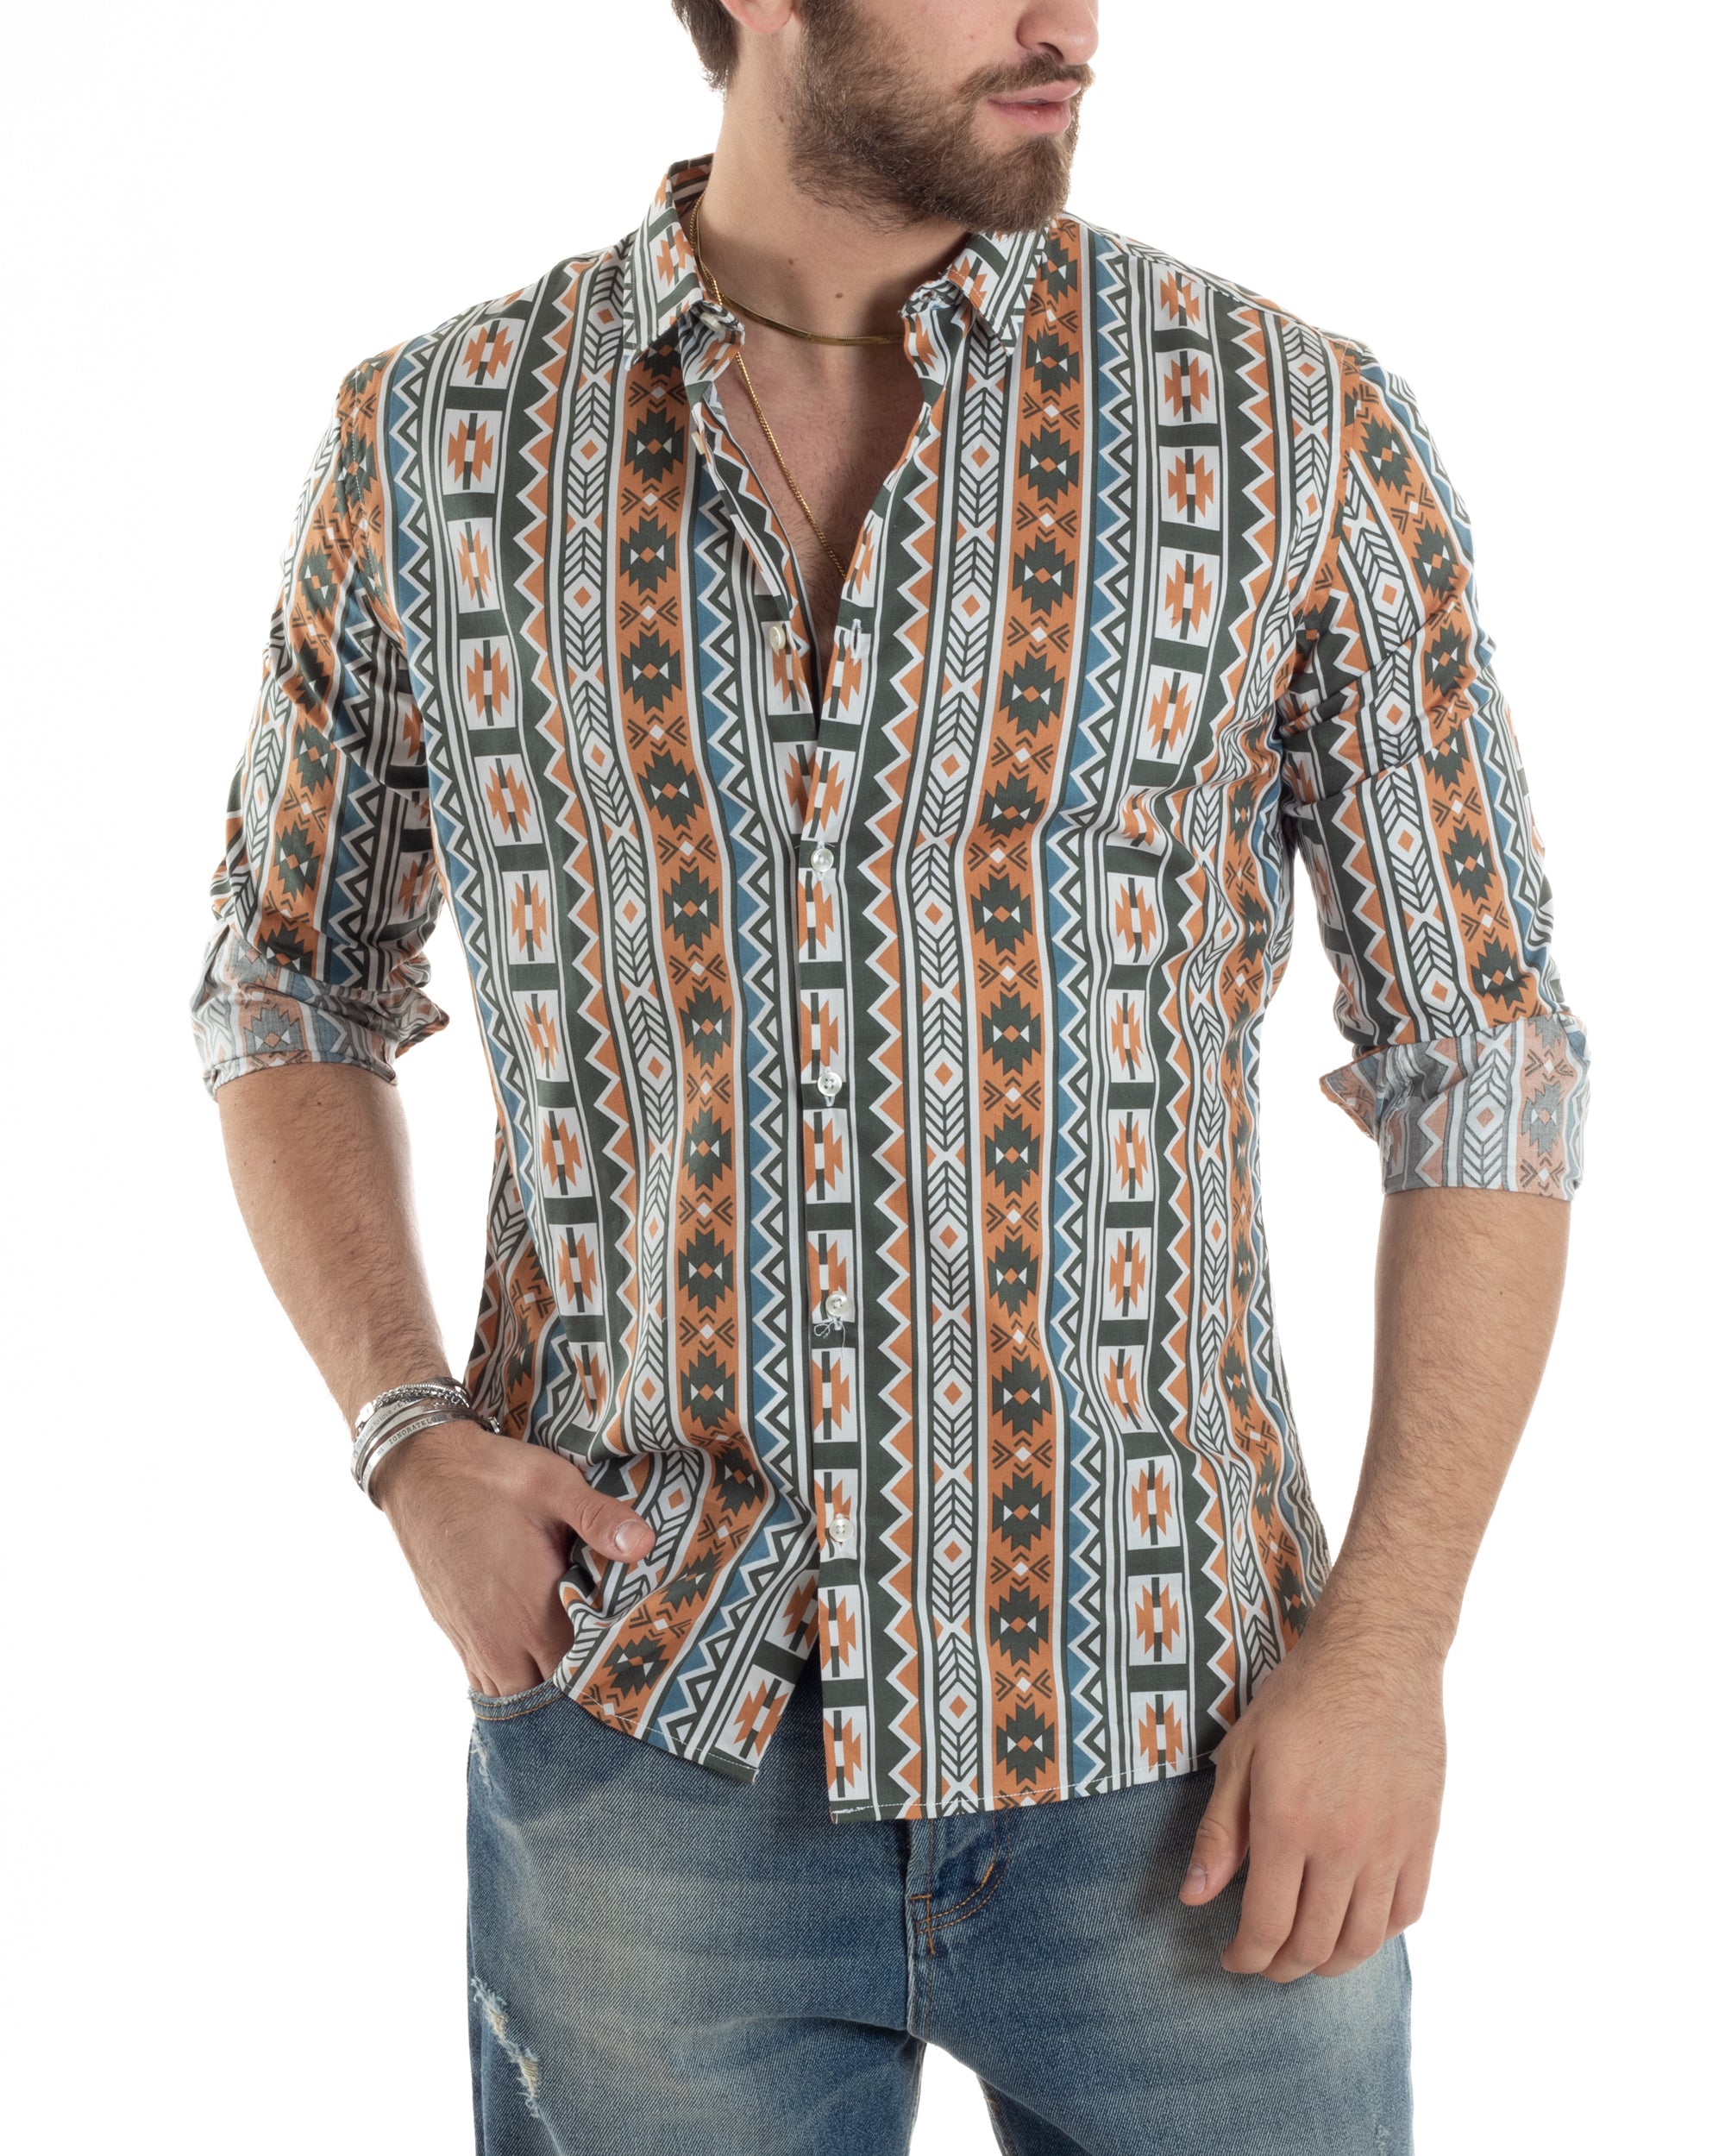 Camicia Uomo Con Colletto Manica Lunga Regular Fit Multicolore Fantasia Etnica GIOSAL-C2859A